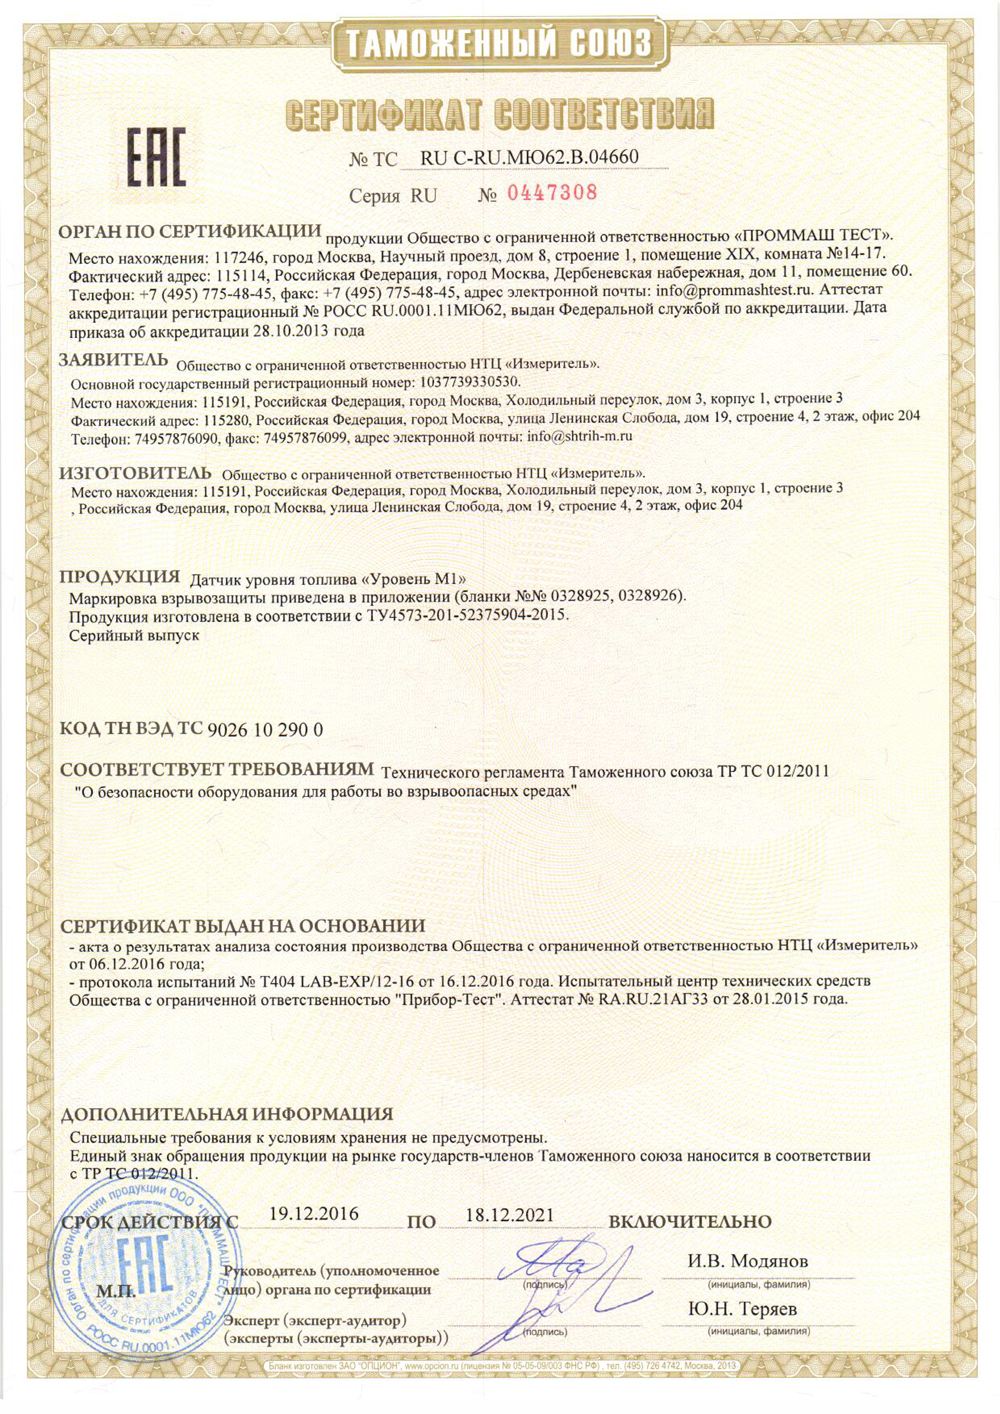 Сертификат соответствия ДУТ требованиям Технического регламента Таможенного союза ТР ТС 012/2011